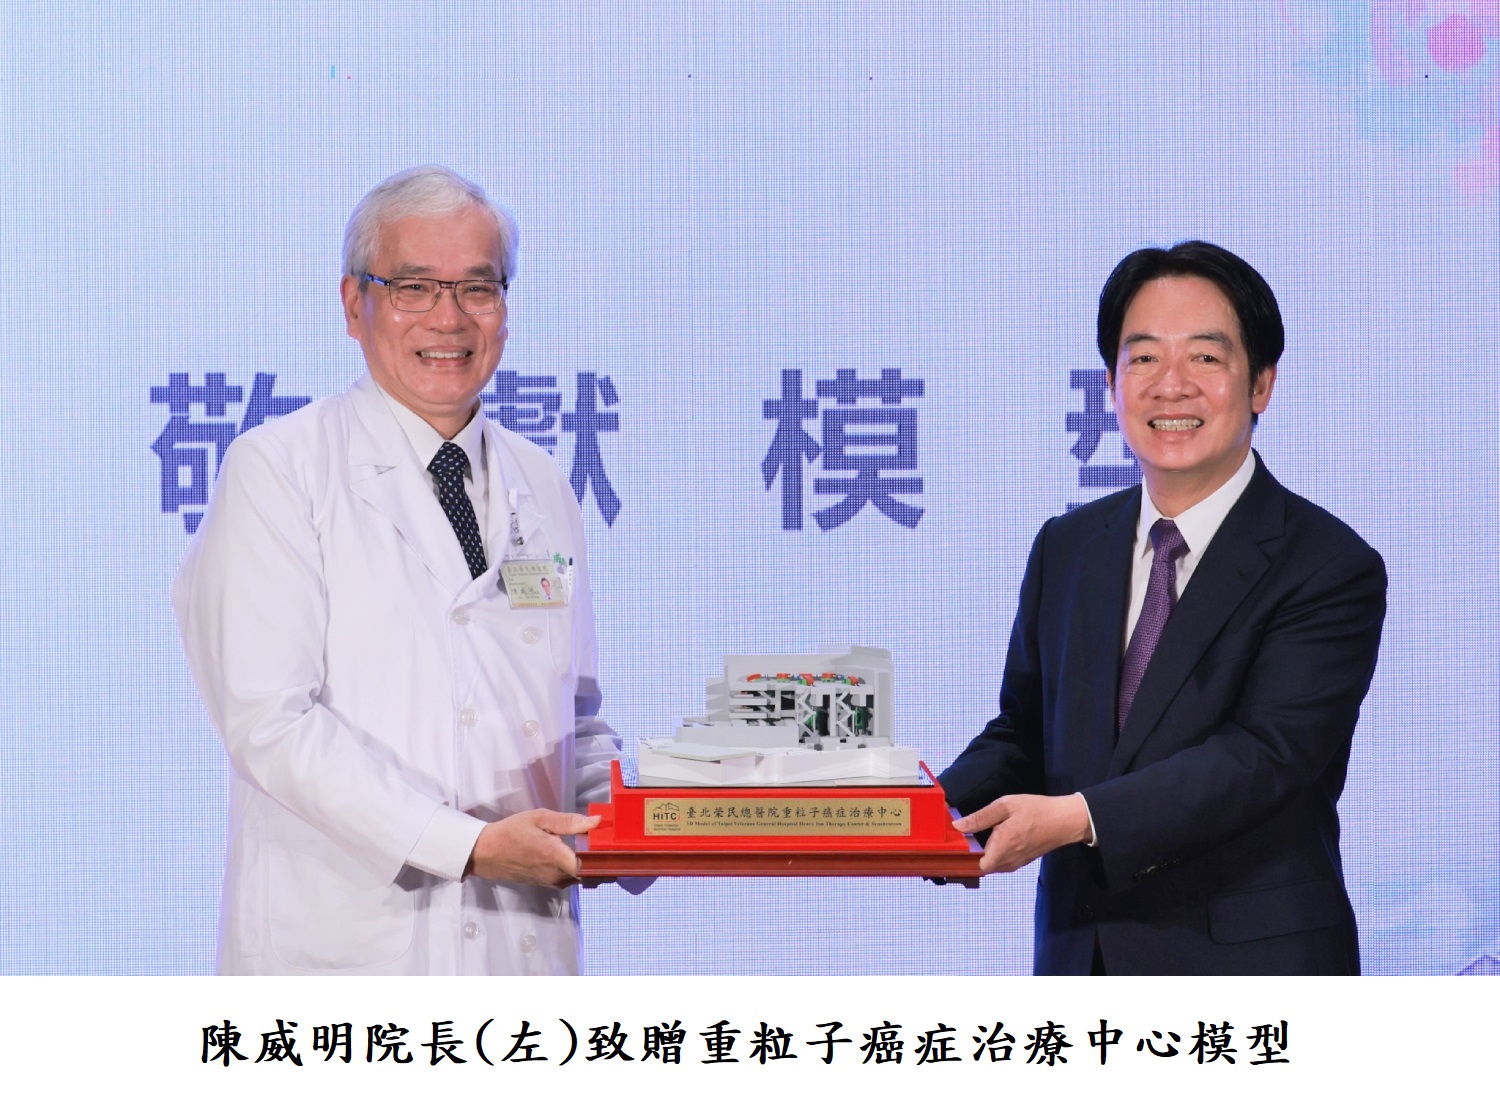 陳威明院長(左)致贈重粒子癌症治療中心模型